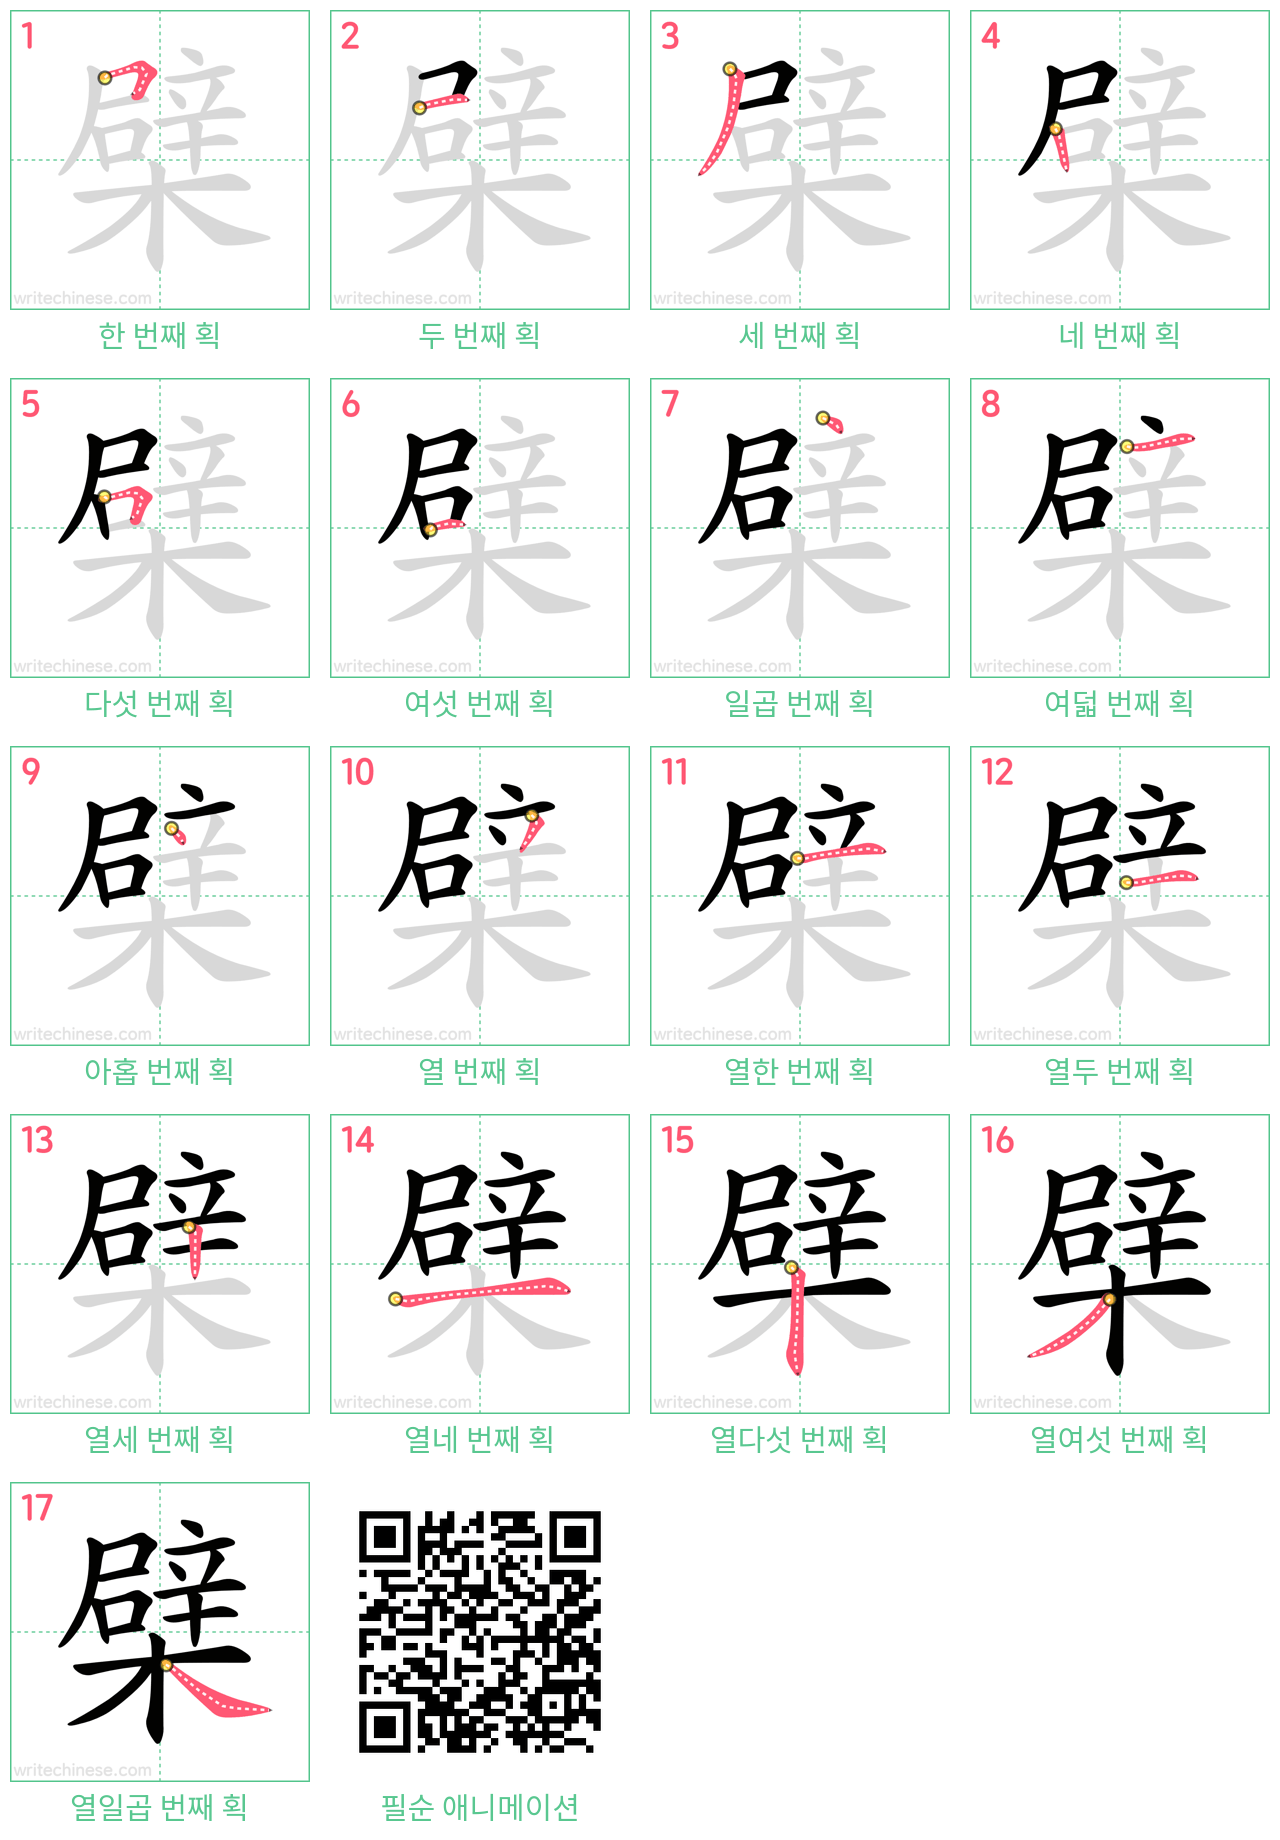 檗 step-by-step stroke order diagrams